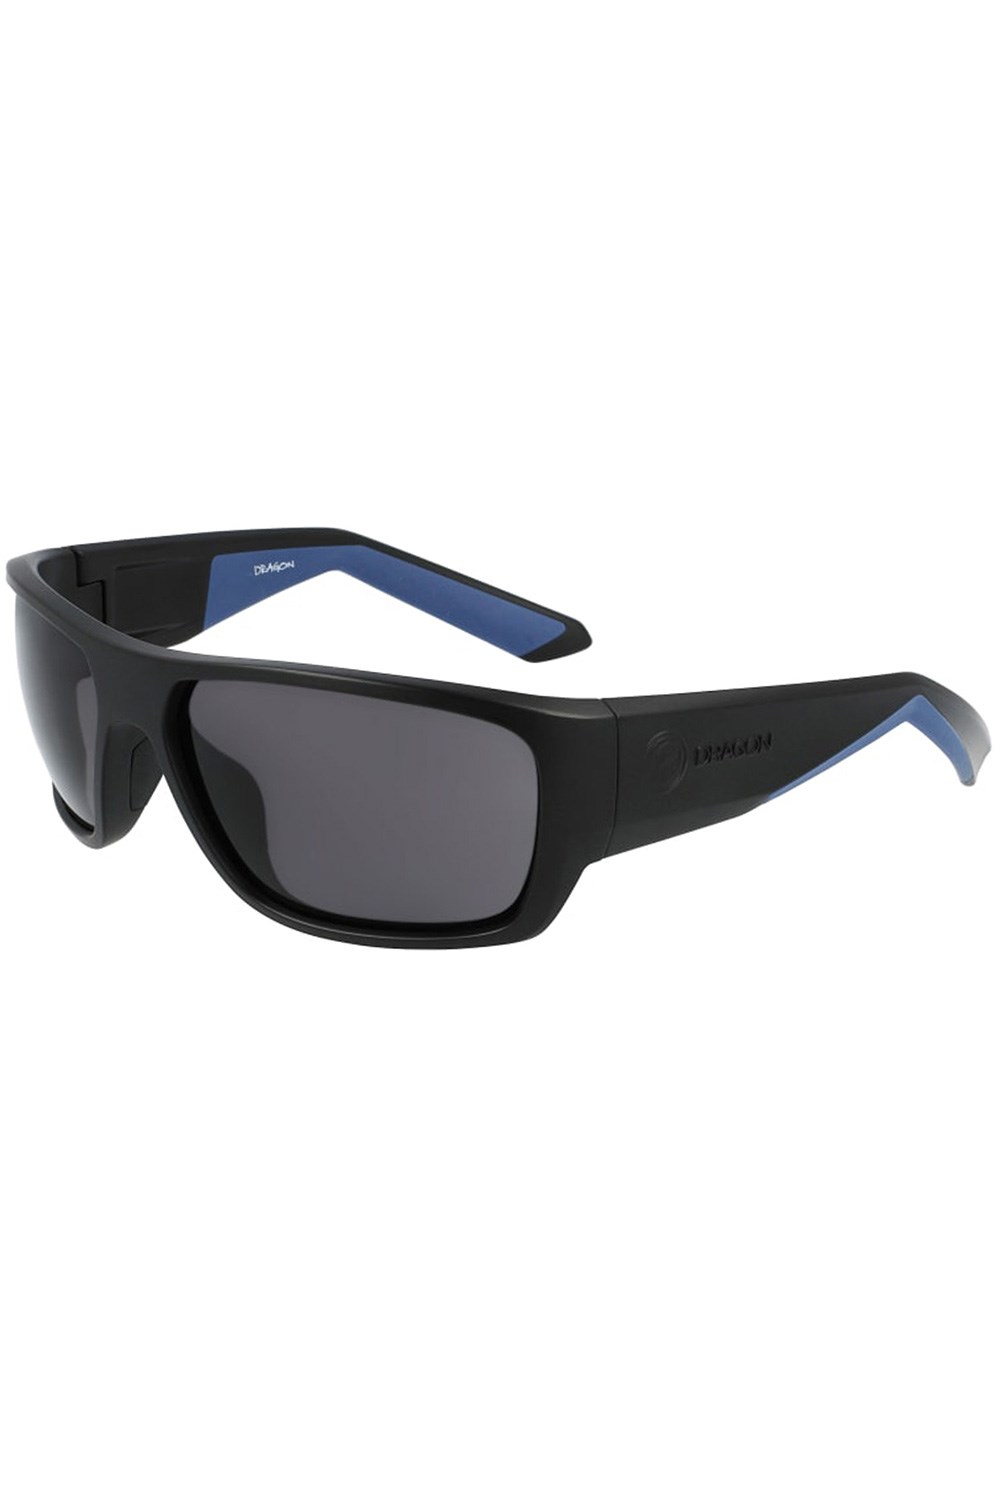 Flare Unisex Sunglasses -